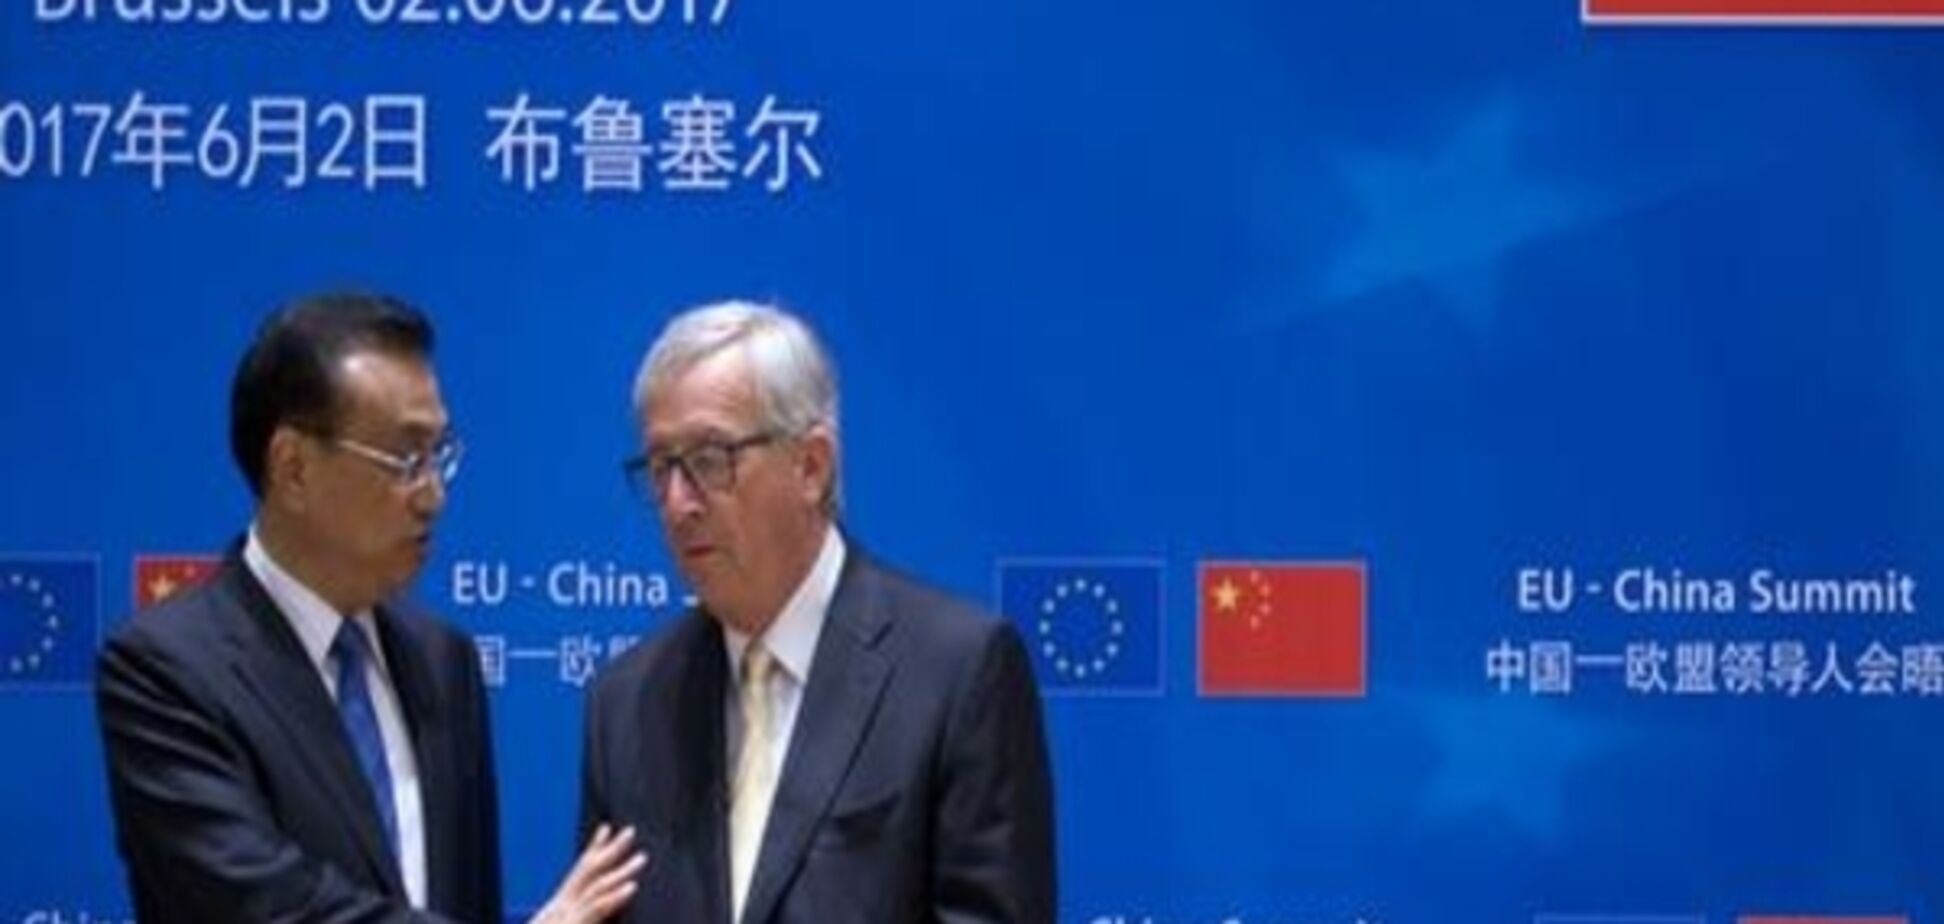 ЄС і Китай посилять співпрацю в питанні захисту клімату